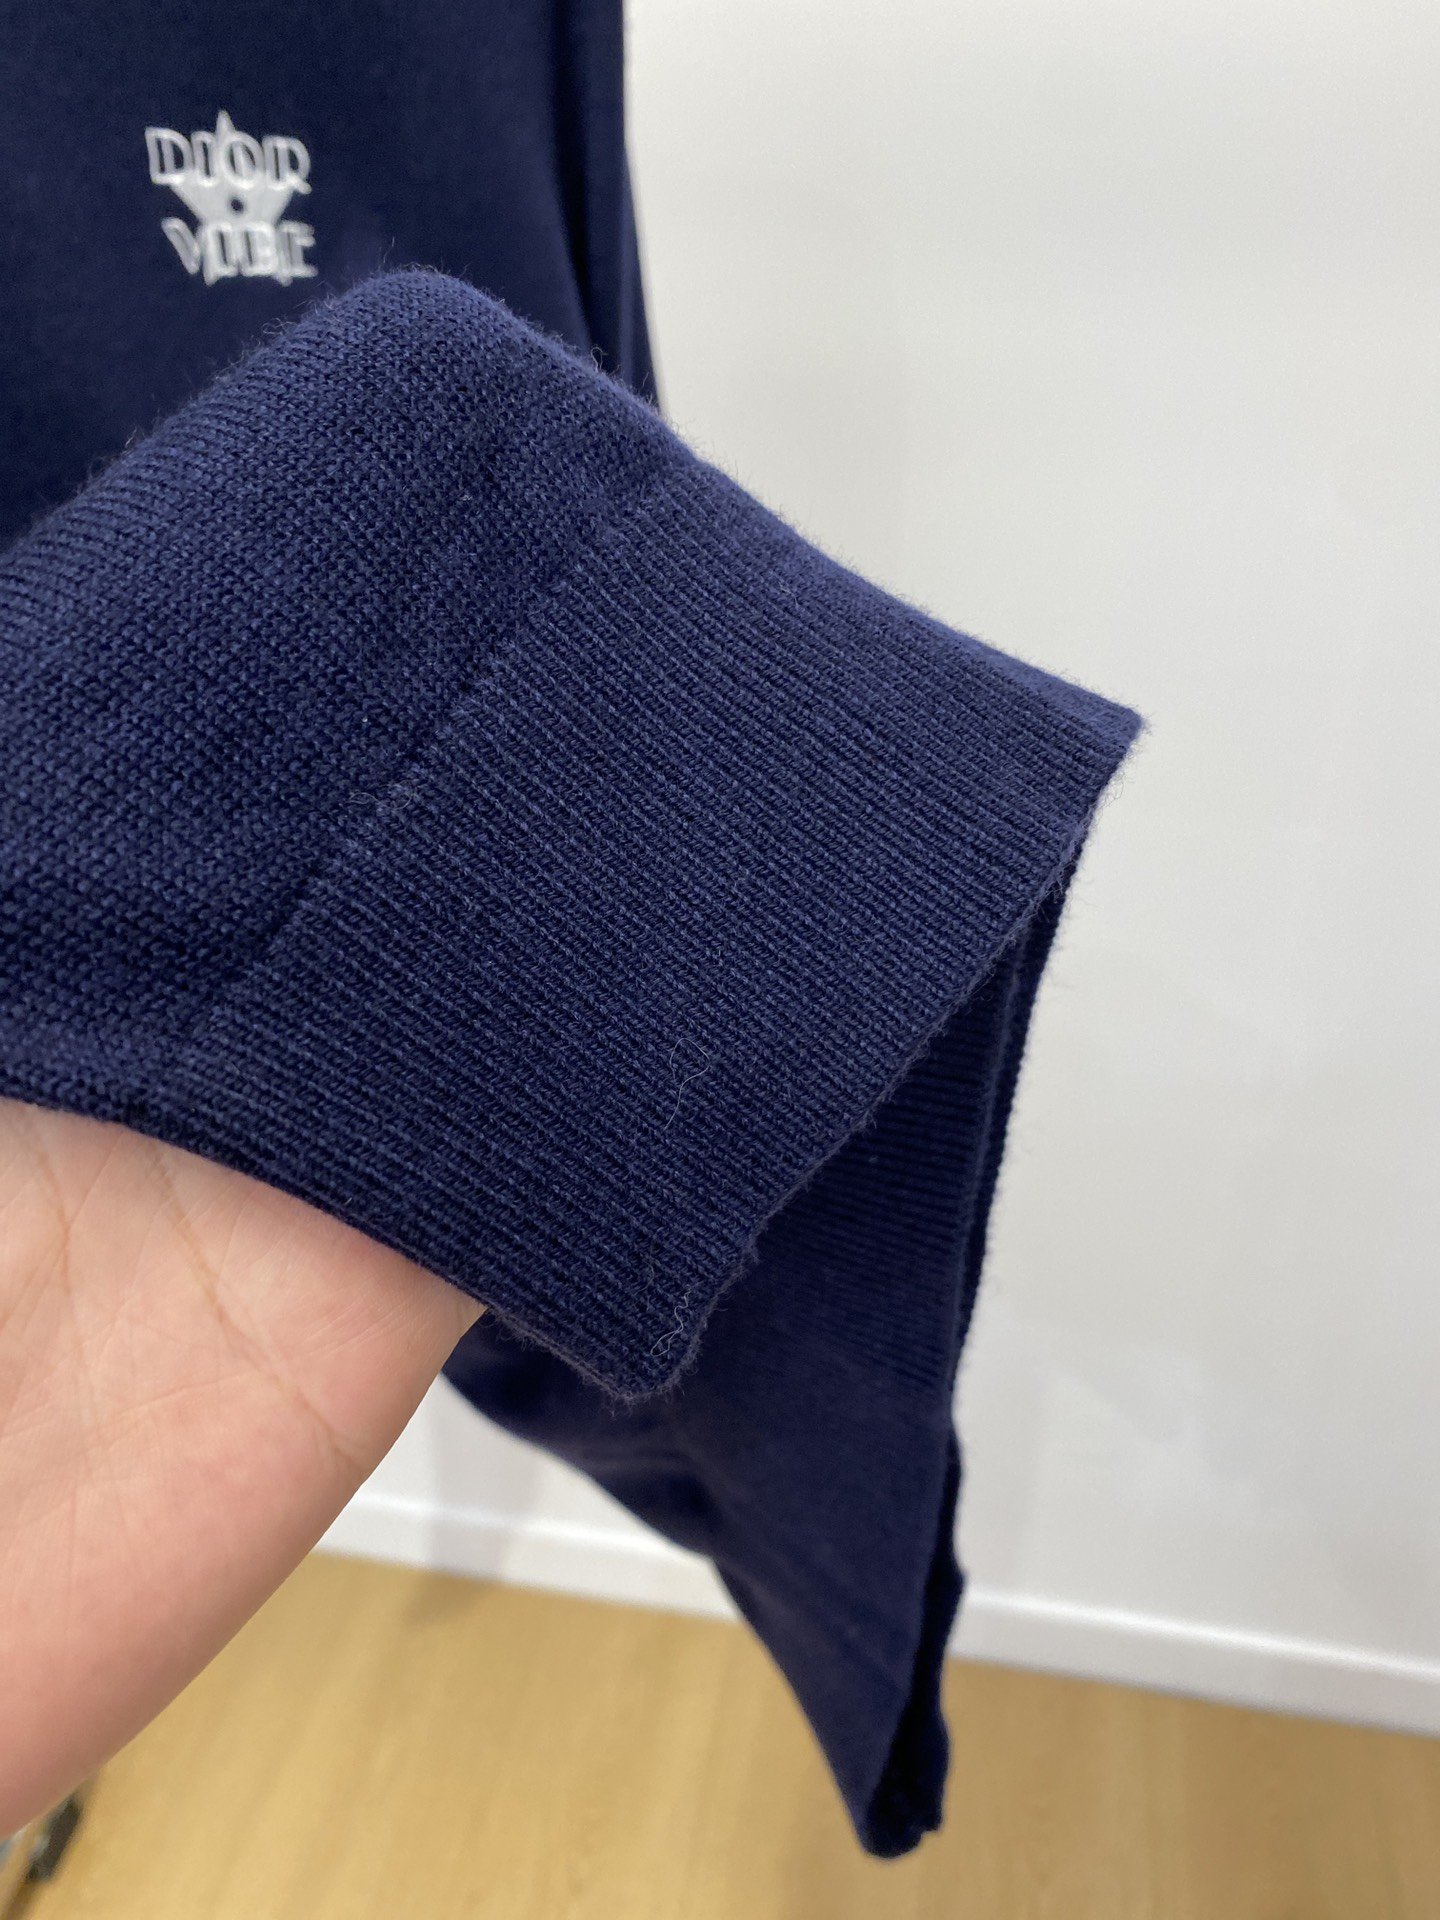 迪奥2023新品羊毛衣具有手感细腻柔软可直接与肌肤接触让暖心的纱线变化出细腻的质感顶级工艺极具特色出彩款